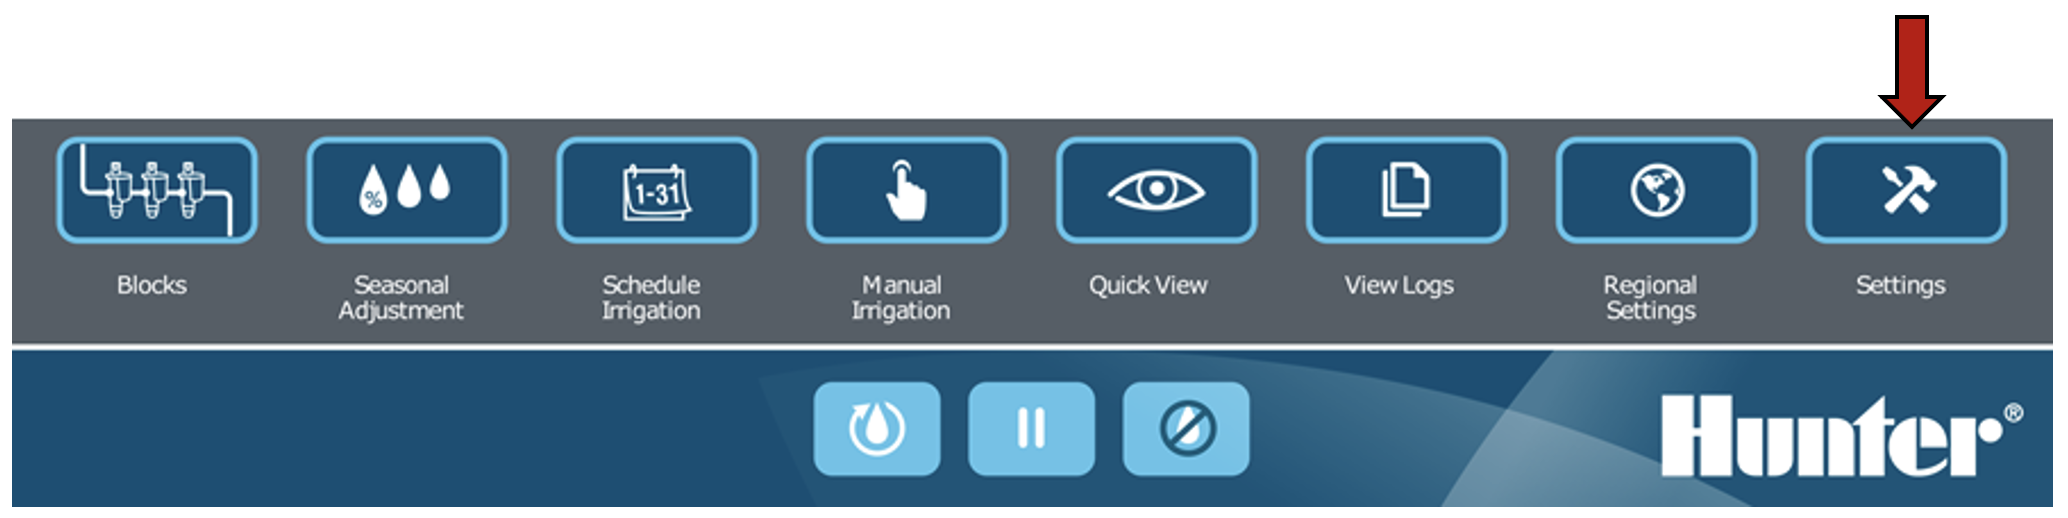 Immagine dell'interfaccia con il pulsante Impostazioni evidenziato.